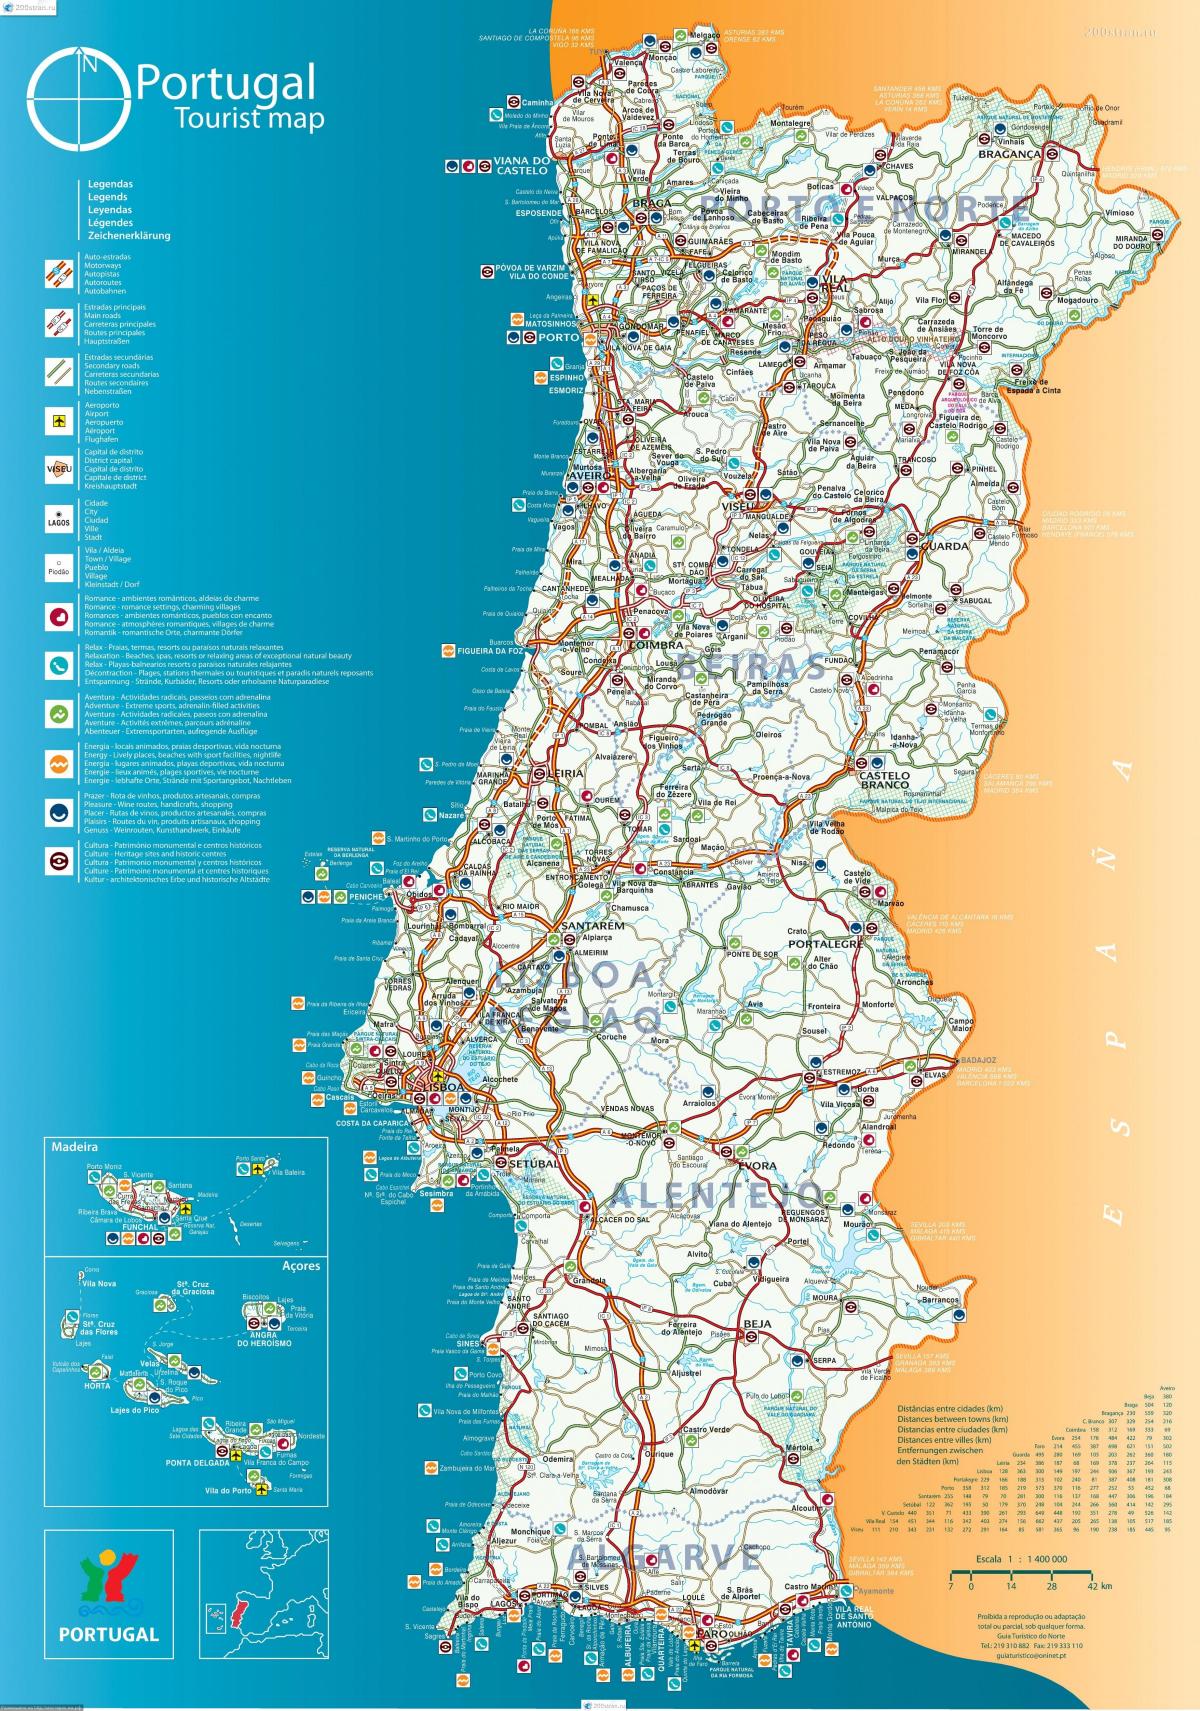 južna europa karta Prijevoz Portugal   karta Portugal prijevoz (Južna Europa   Europa) južna europa karta